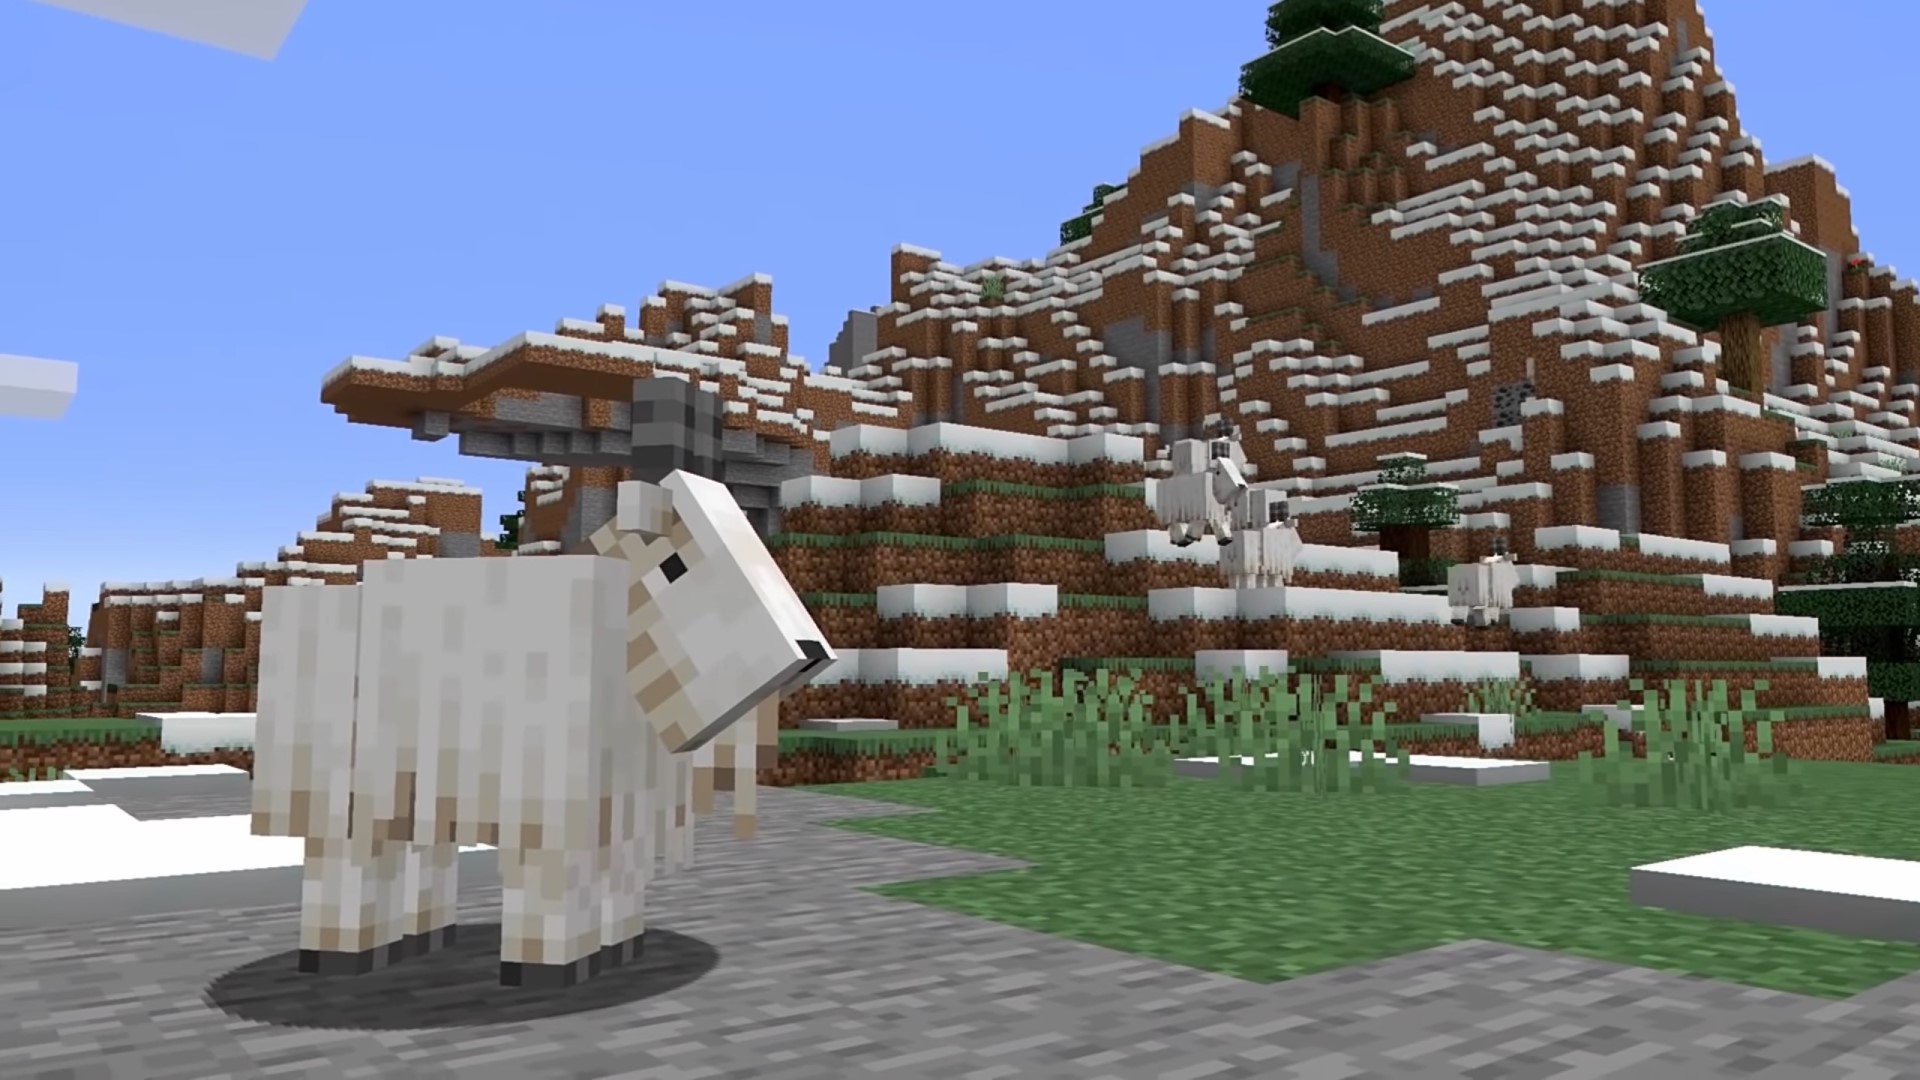 Minecraft'ın çığlık atan keçileri %50 keçi çığlıkları, %50 insan çığlıkları kullanıyor